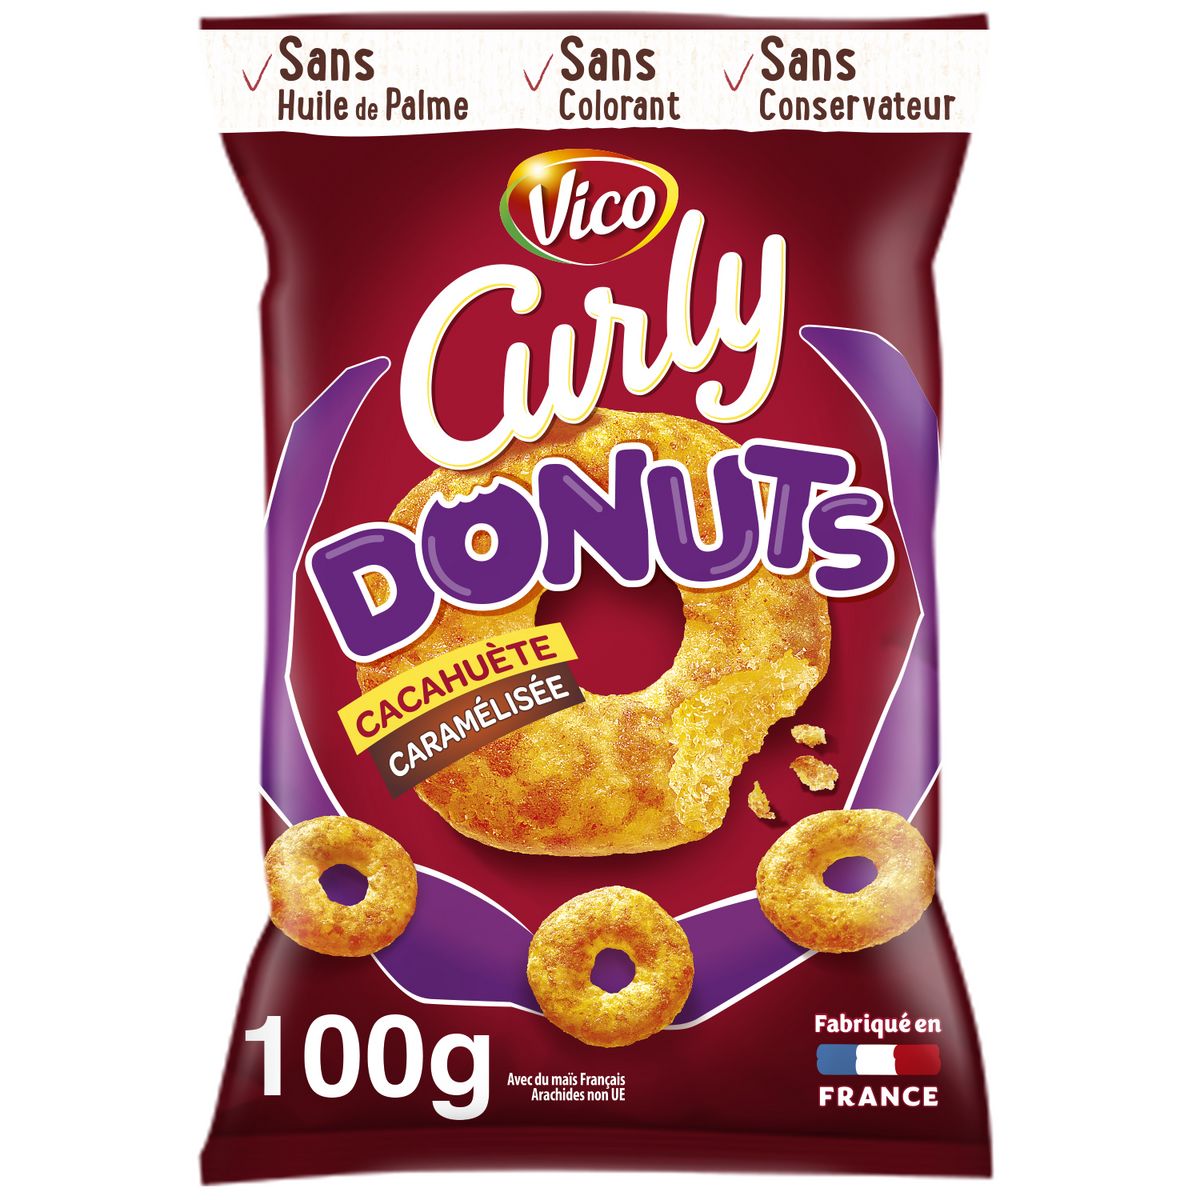 CURLY Donuts à la cacahuète caramélisée sans huile de palme 100g